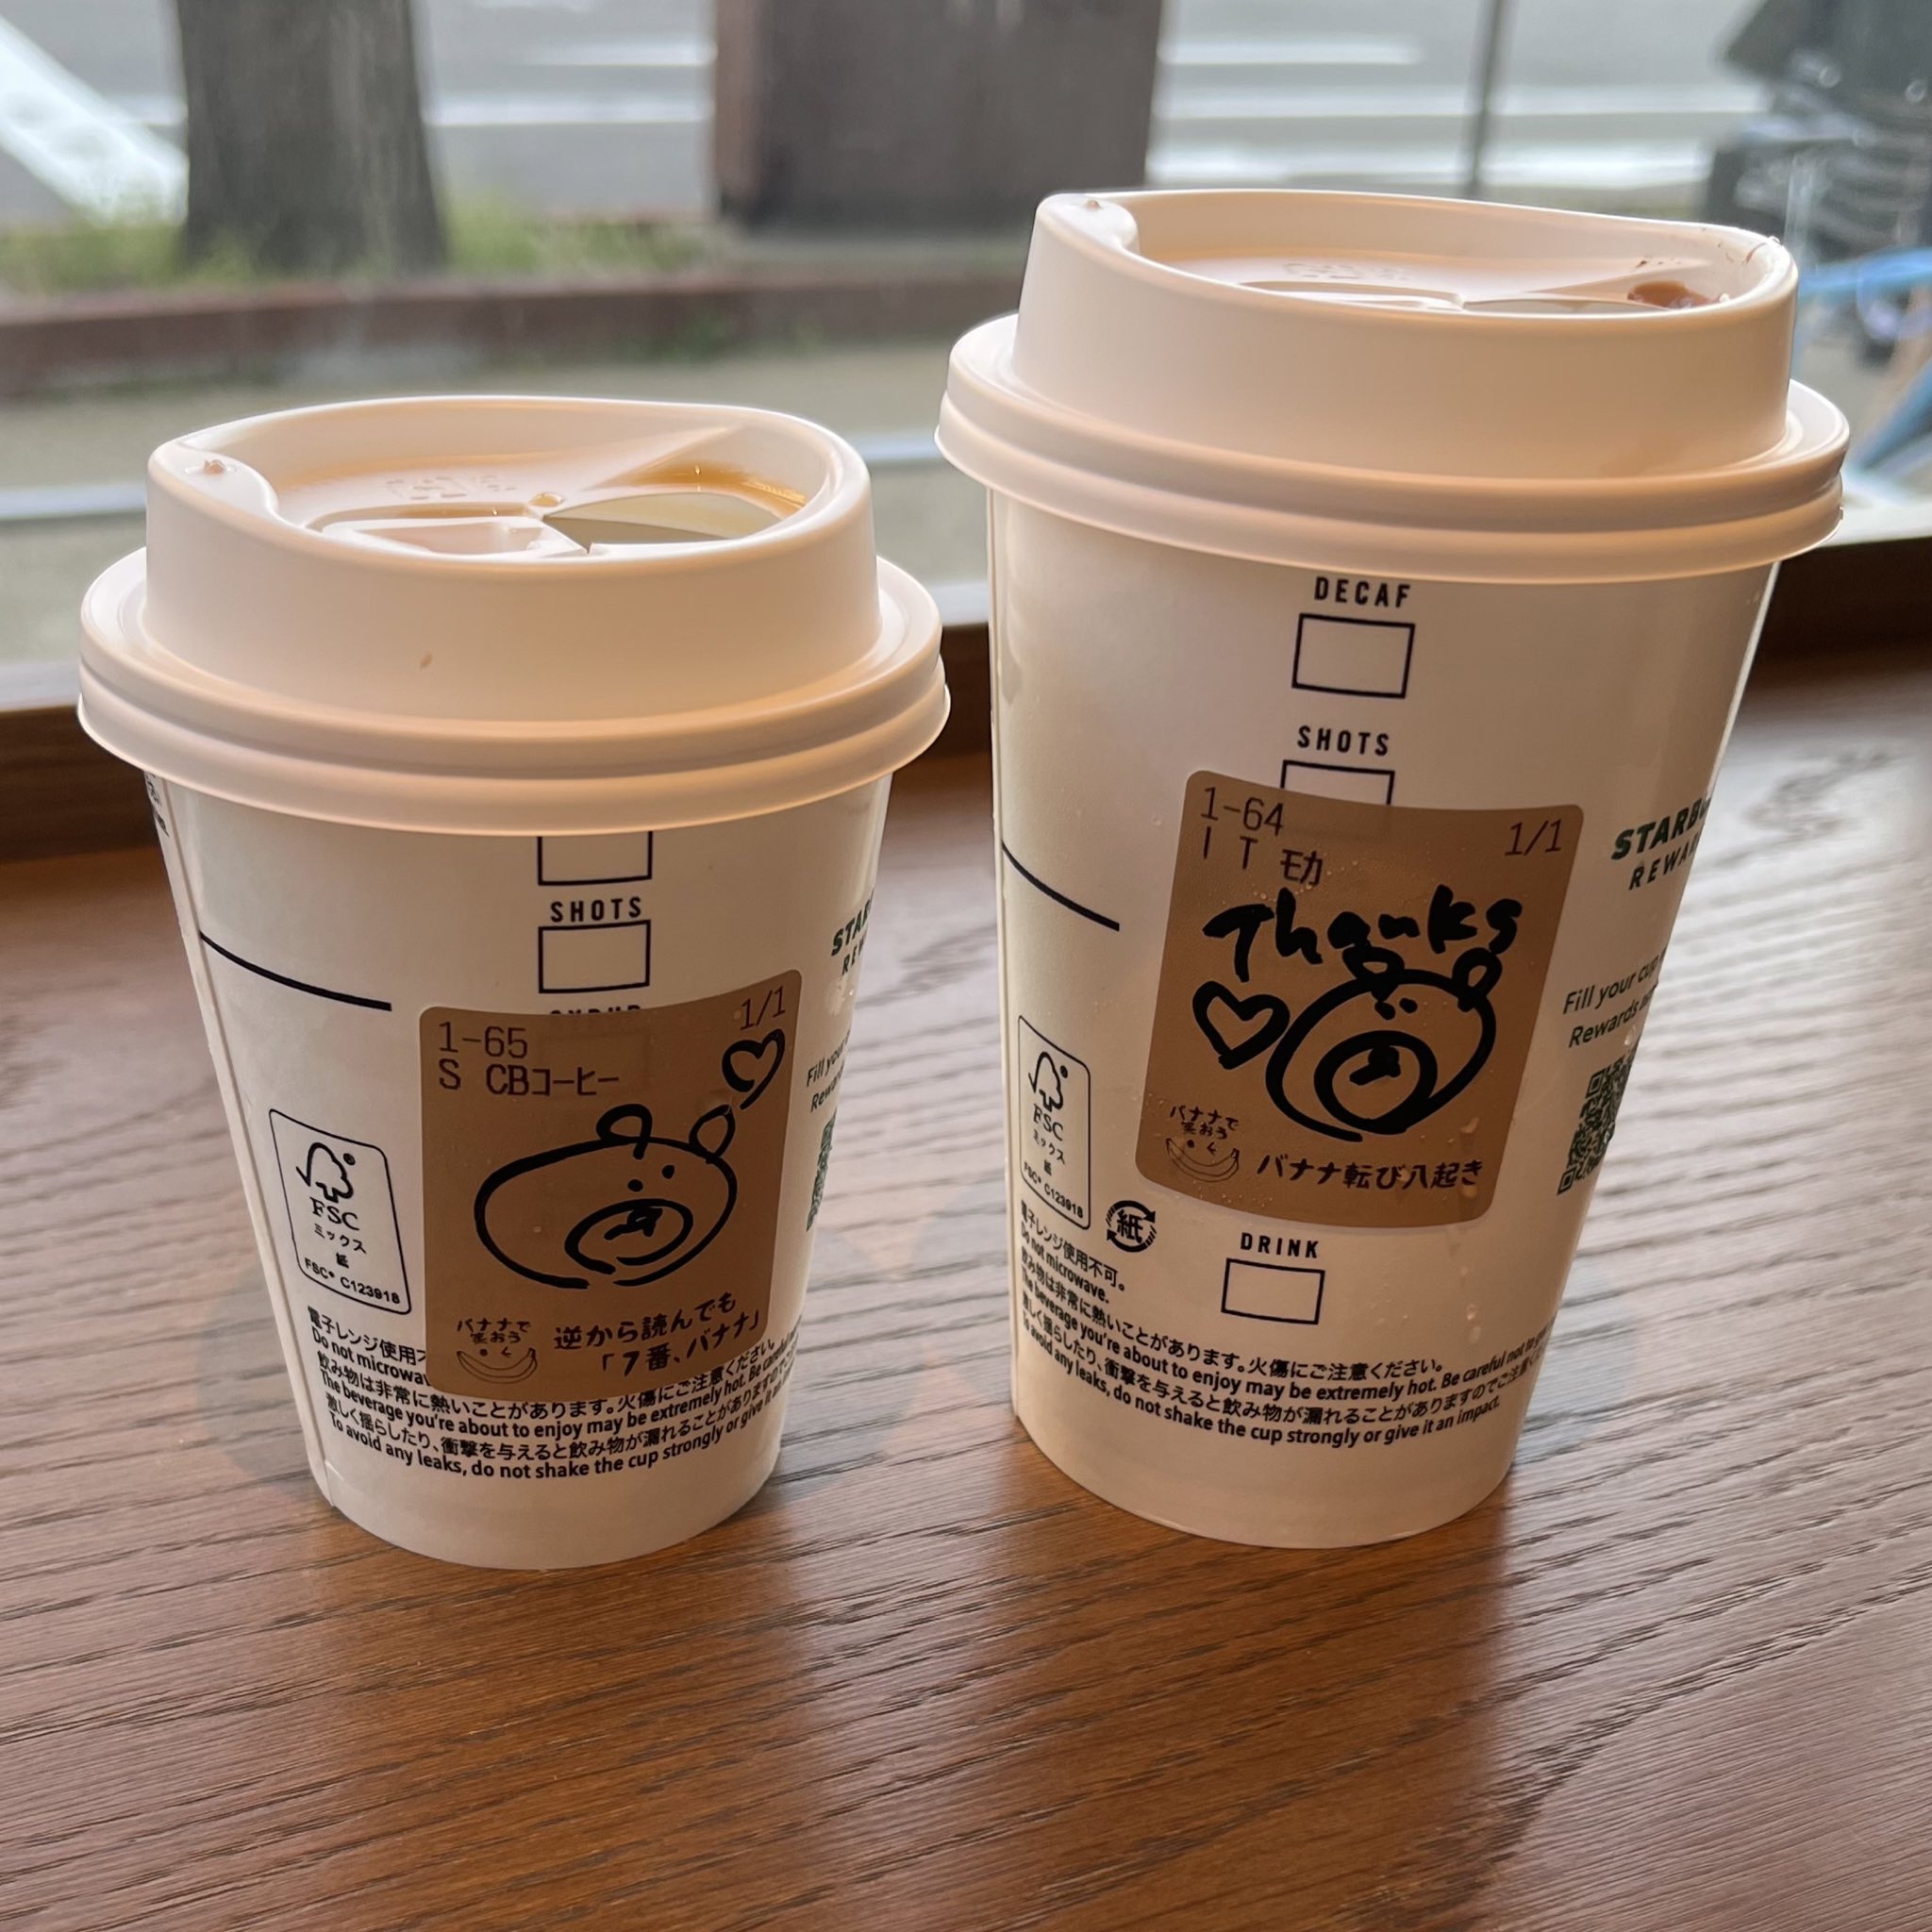 Cafe Kurutoko En Twitter こんばんは くるとこです 先日スターバックスに行ったらカップに可愛いクマのイラストが描かれていました 手書きの文字やイラストってなんだかほっこりするし 嬉しい気分になりますよね みなさんも何か書いてもらったイラスト